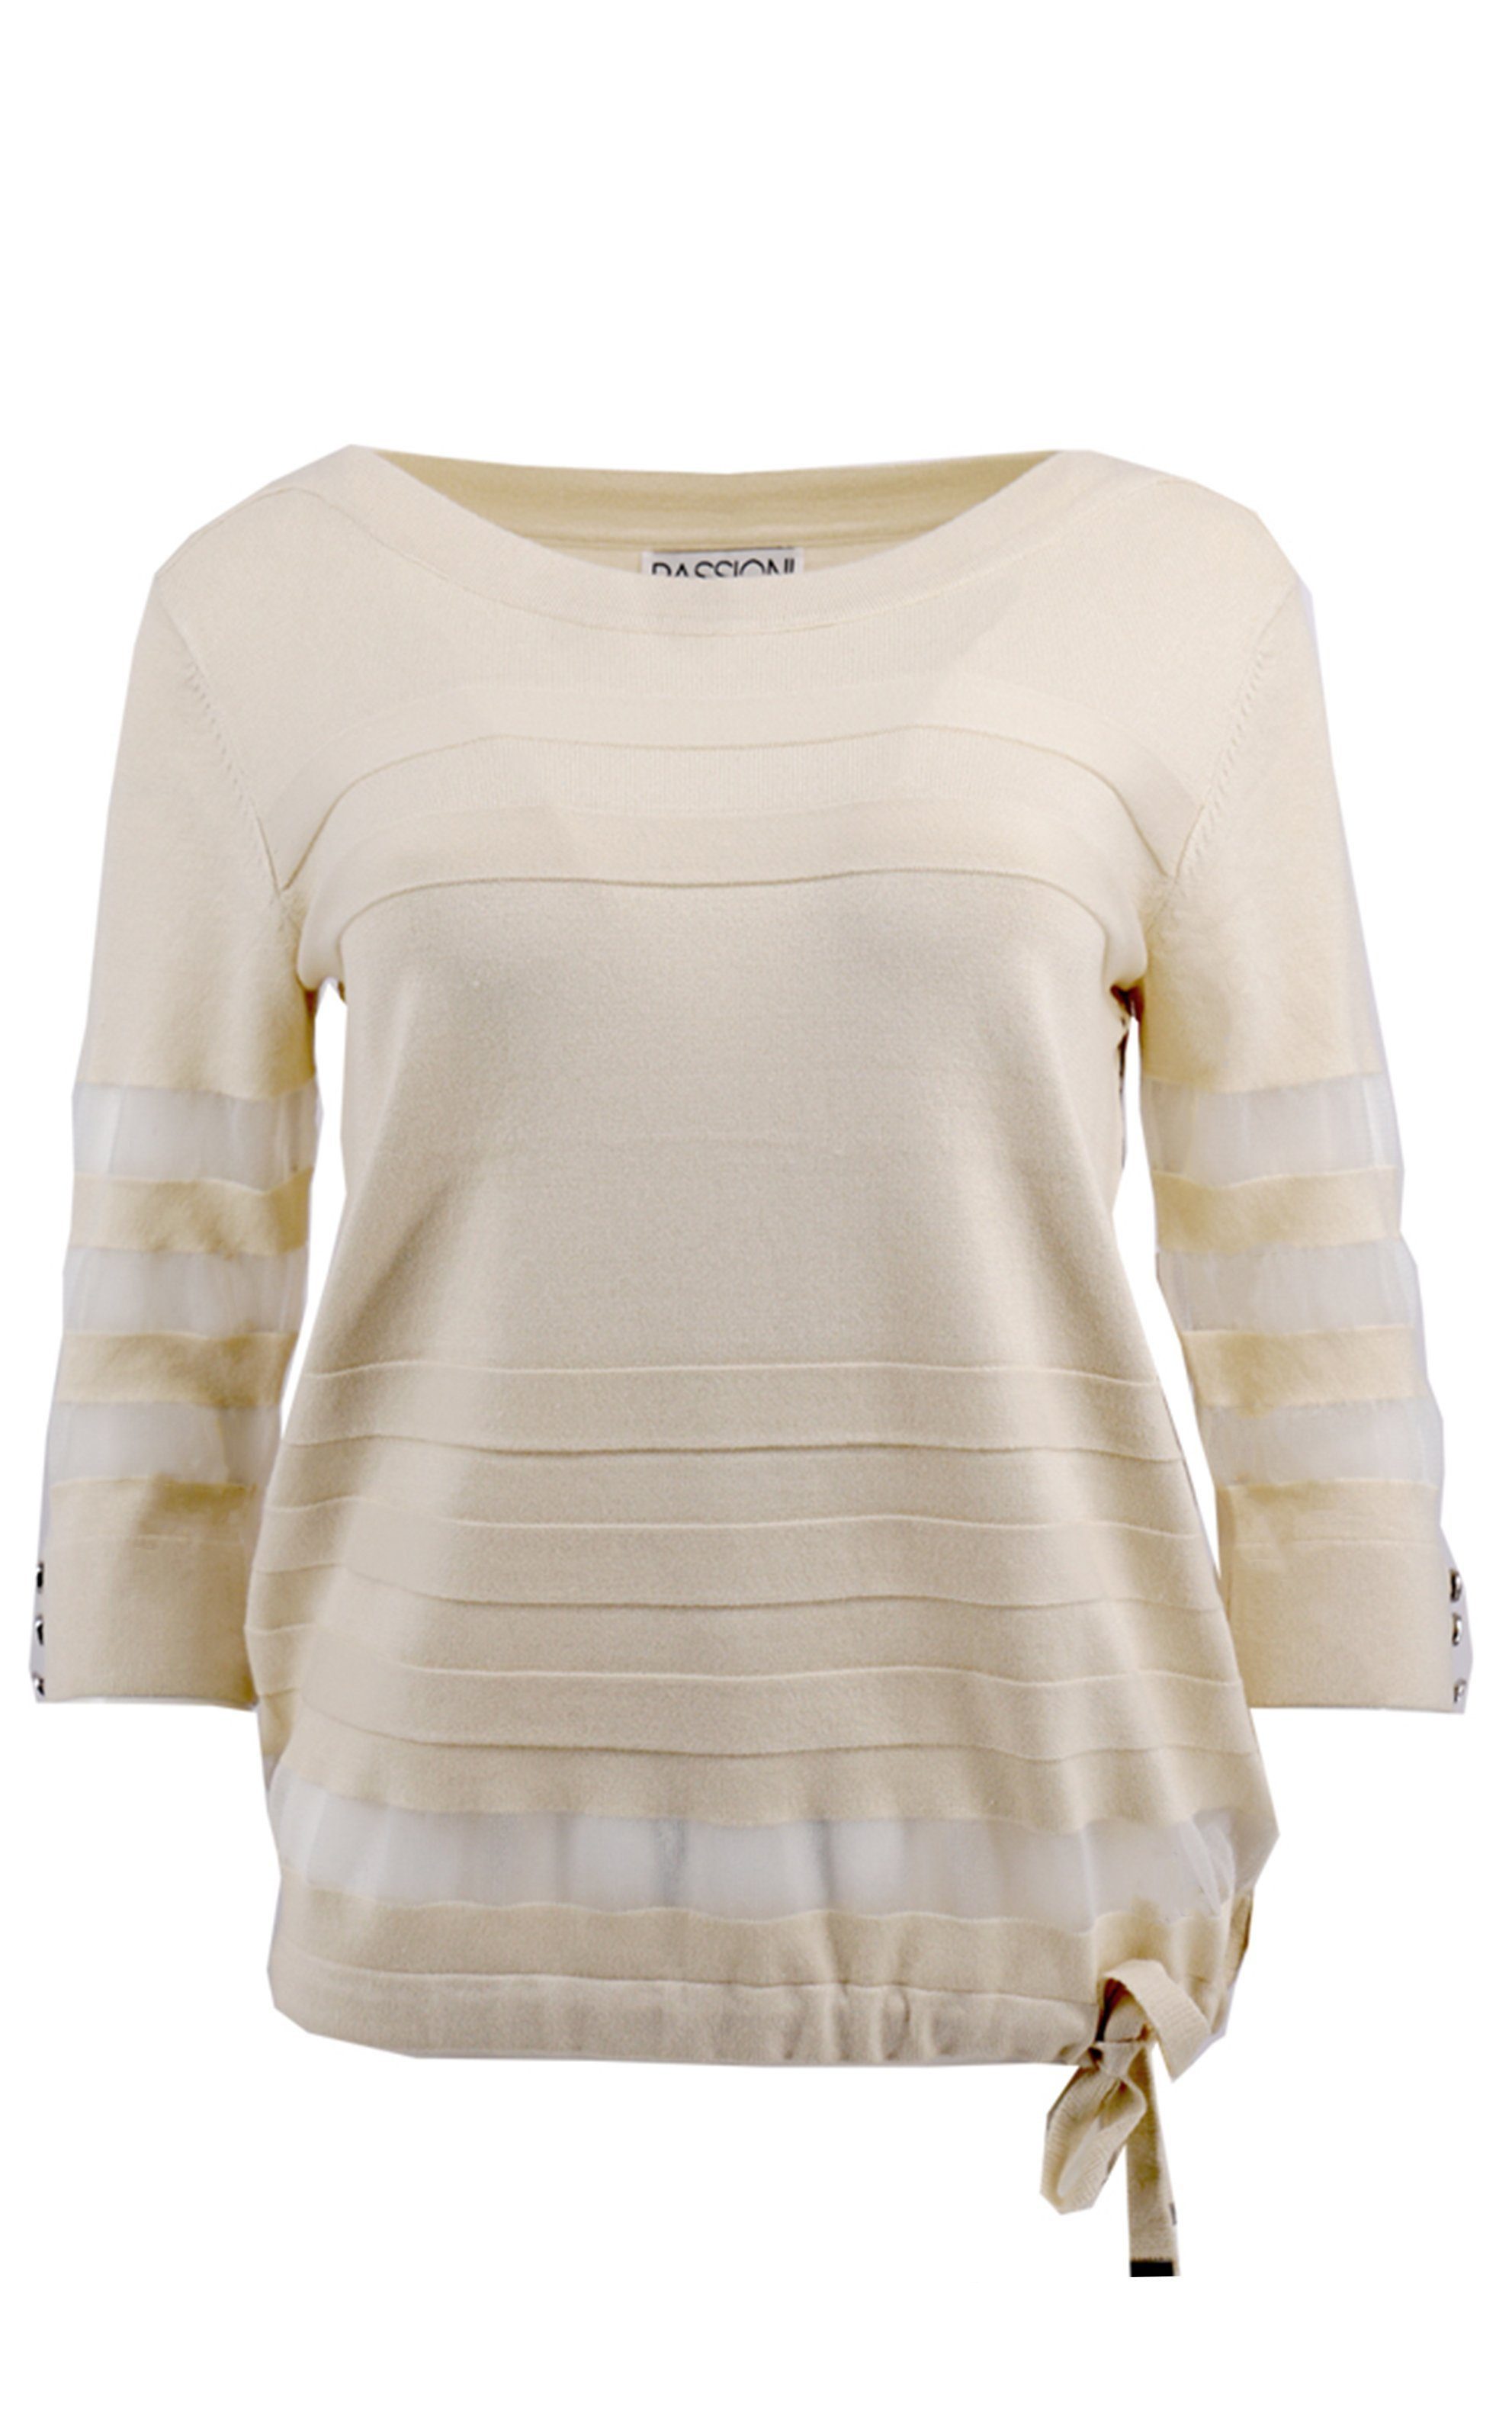 Passioni 3/4 Arm-Pullover Pullover in Beige mit 3/4 Ärmeln und transparenten Streifendetails transparente Streifen